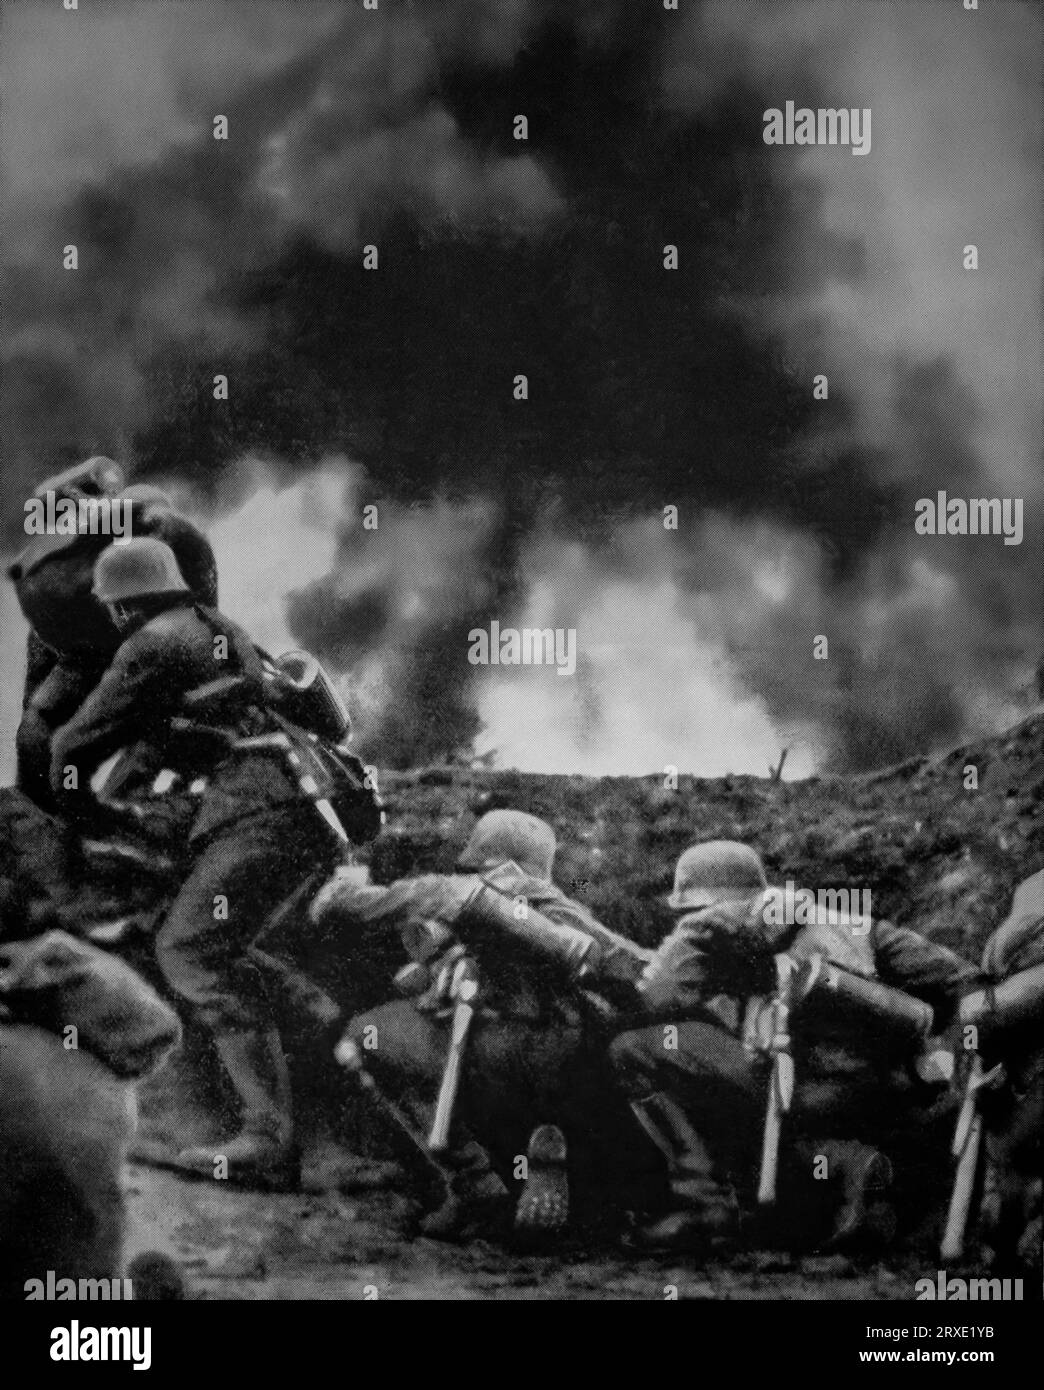 Deutsche Infanterie rückte hinter gepanzerten und mechanisierten Infanterieformationen vor, während des Blitzkreigs auf Paris im Juni 1940 während des Zweiten Weltkriegs Stockfoto